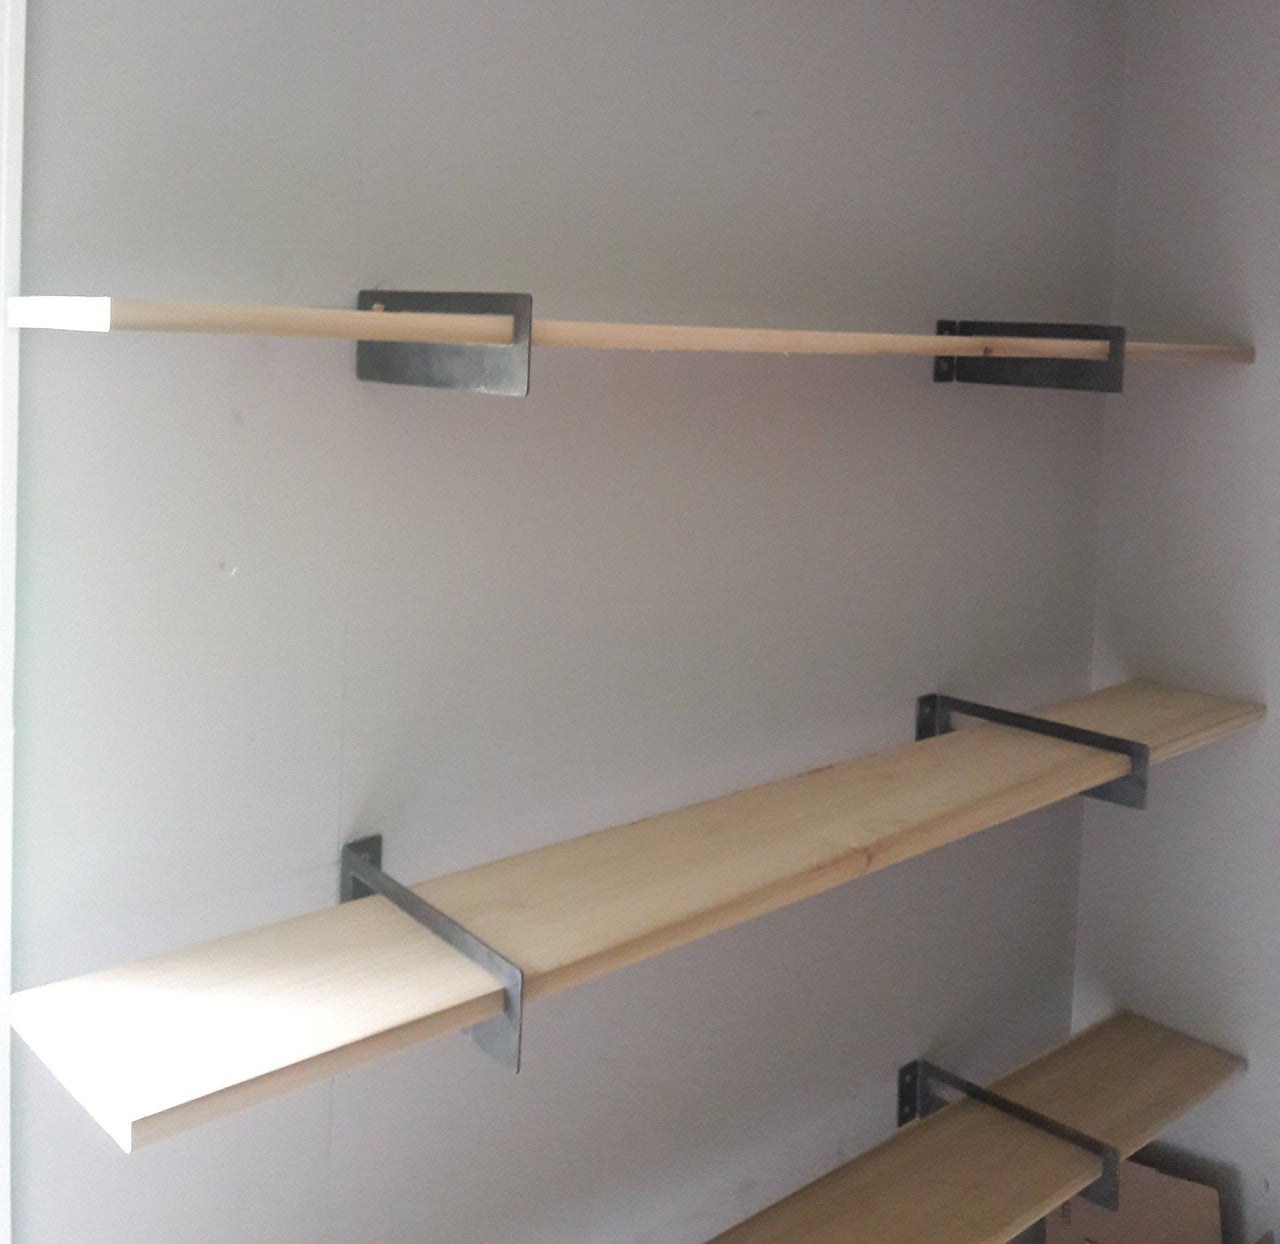 Standard Metal Shelf Brackets (2) - Modern, Contemporary